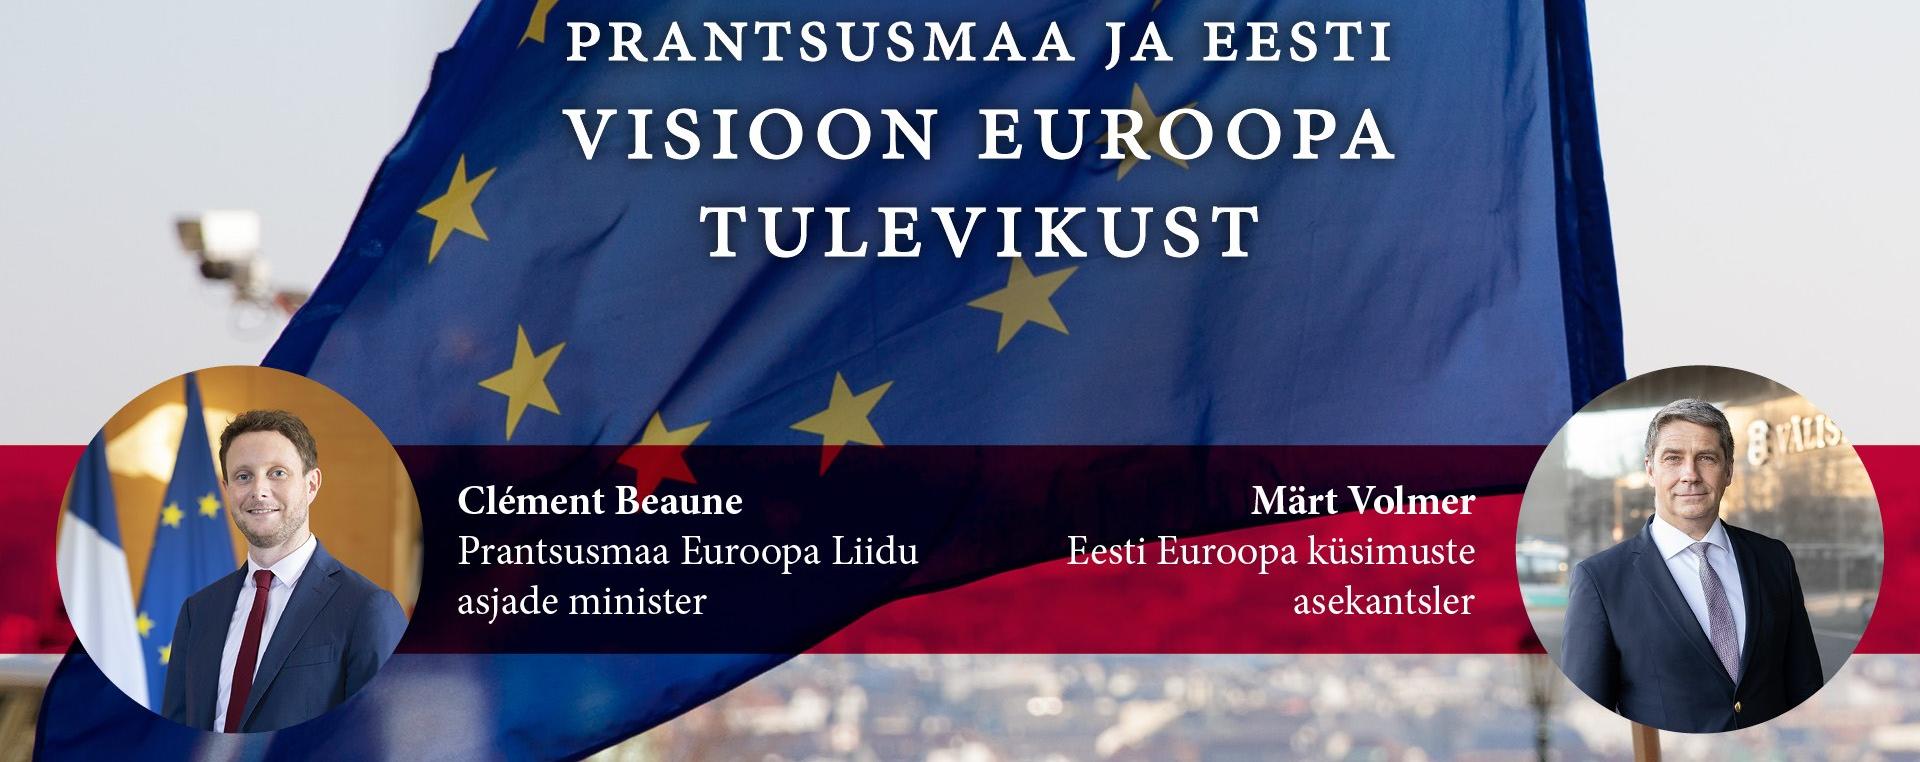 Avalik seminar Prantsusmaa ja Eesti Euroopa tuleviku visioonist